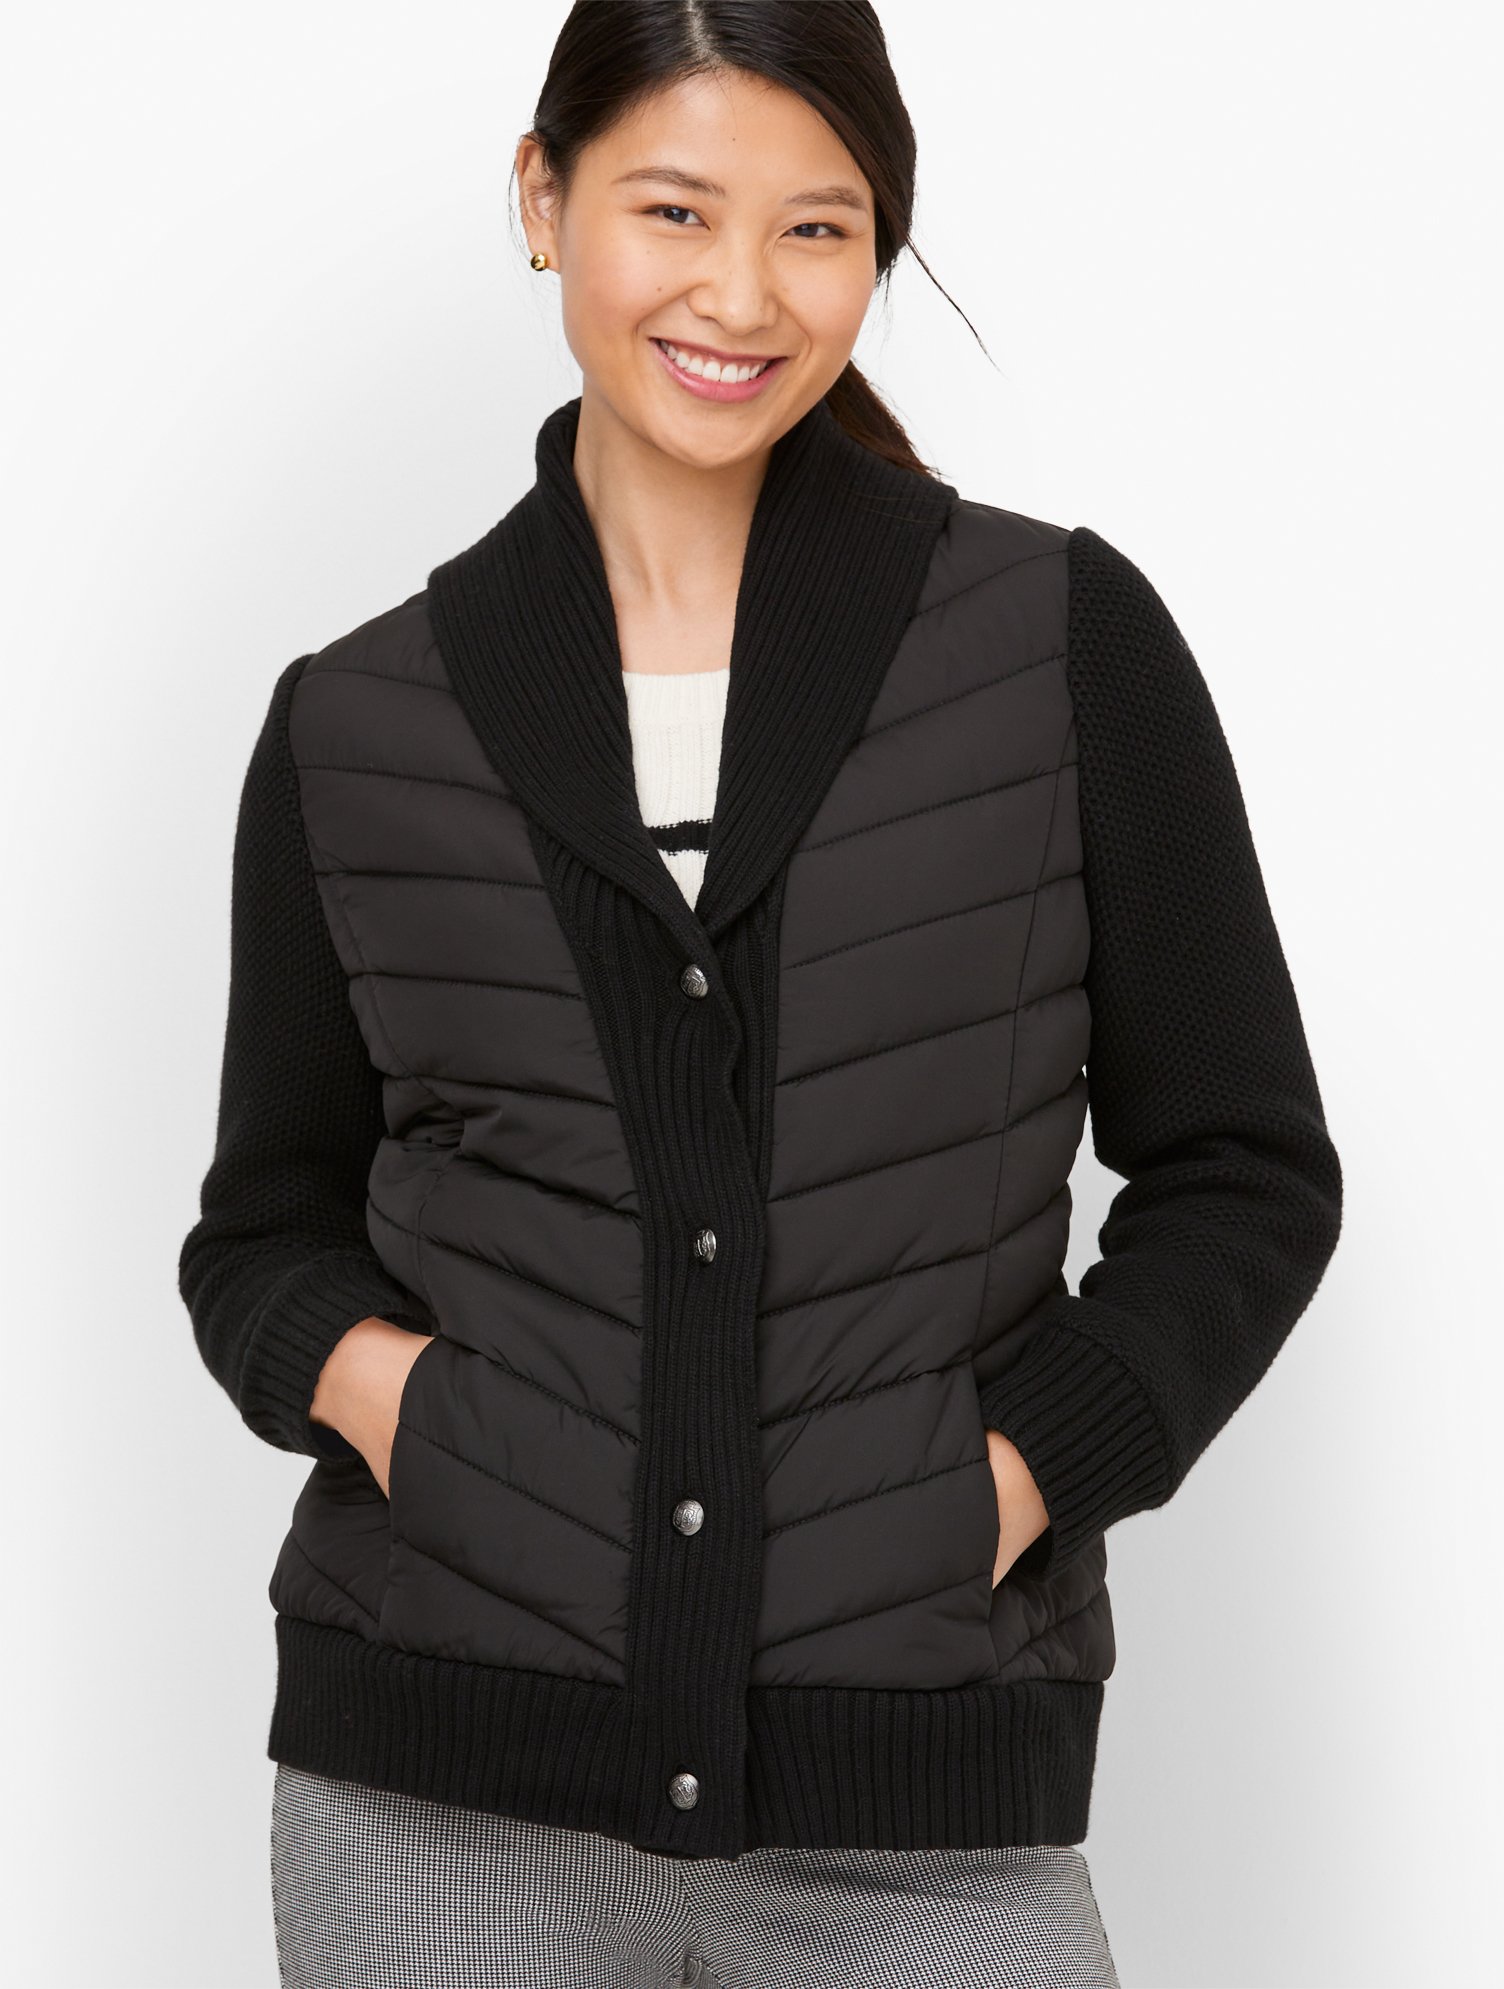 Talbots Petite - Sweater Sleeve Puffer Jacket - Black - Medium